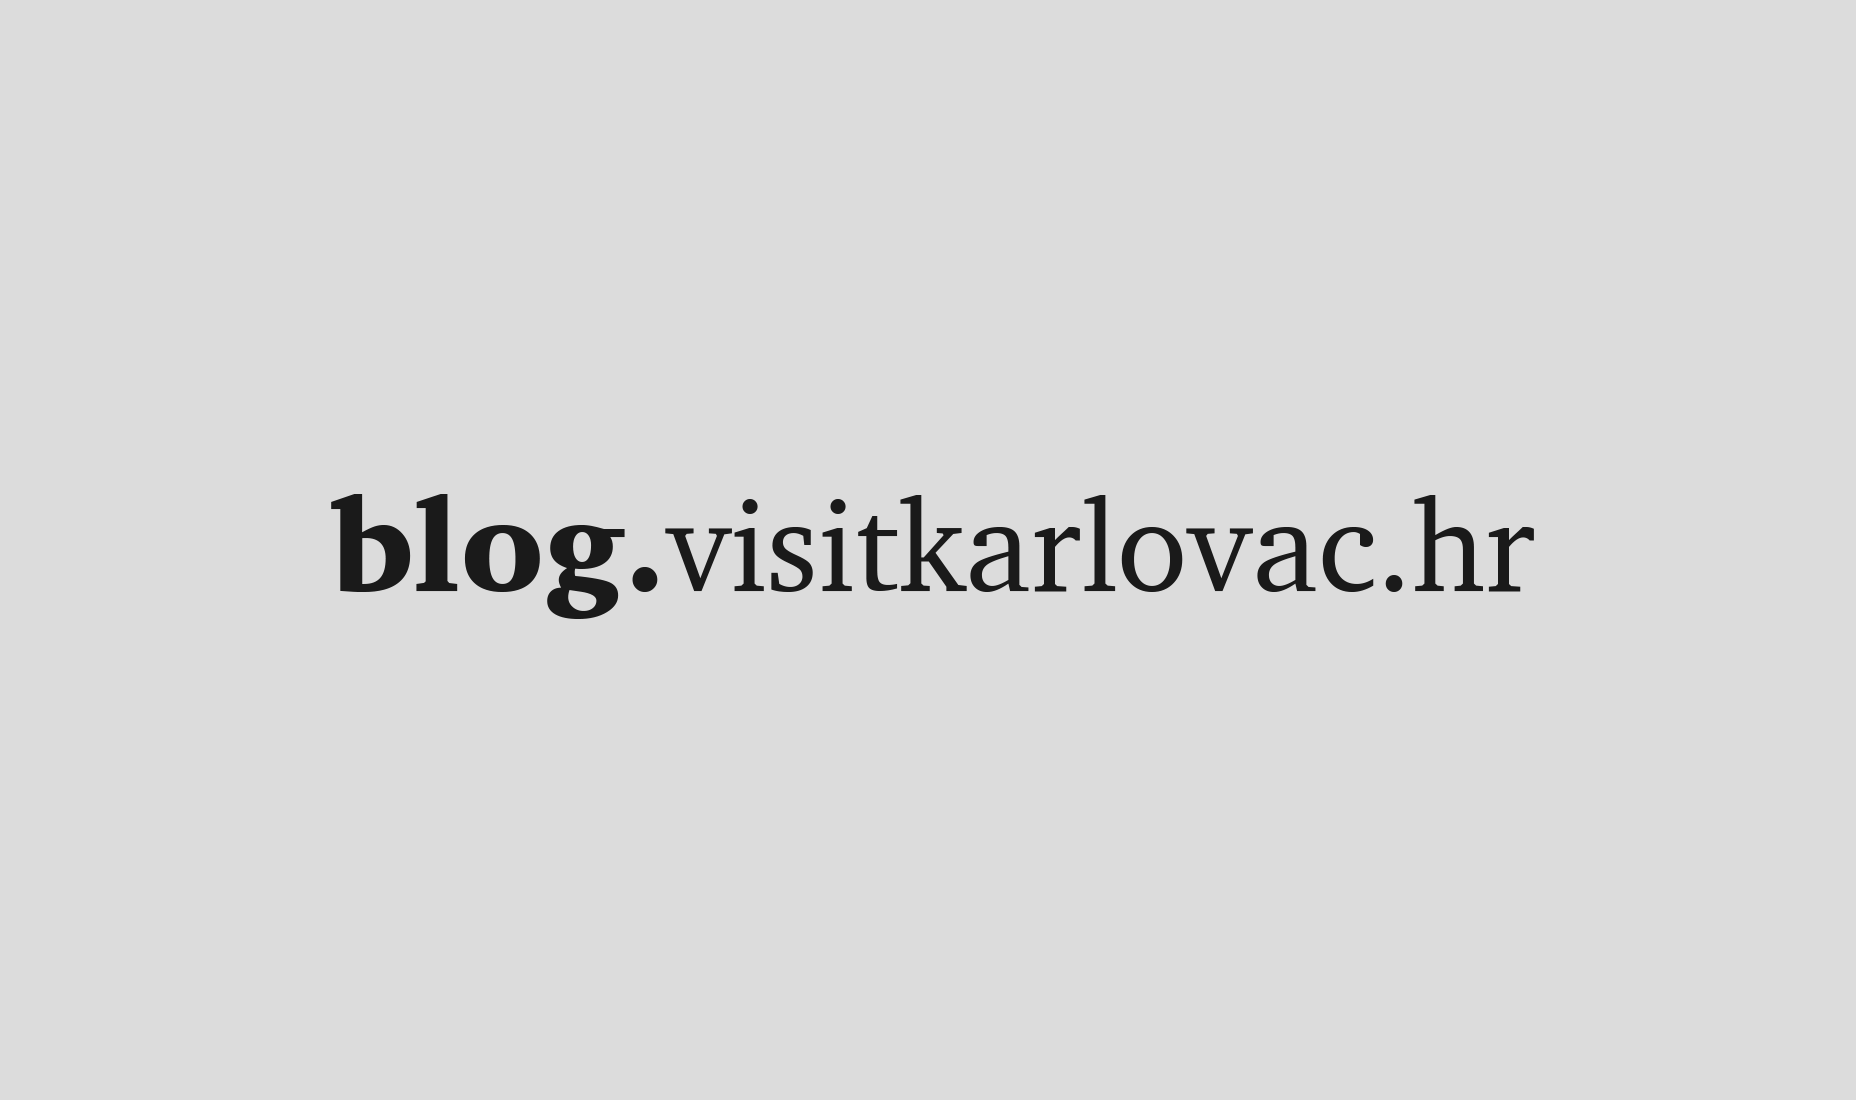 Visit Karlovac blog